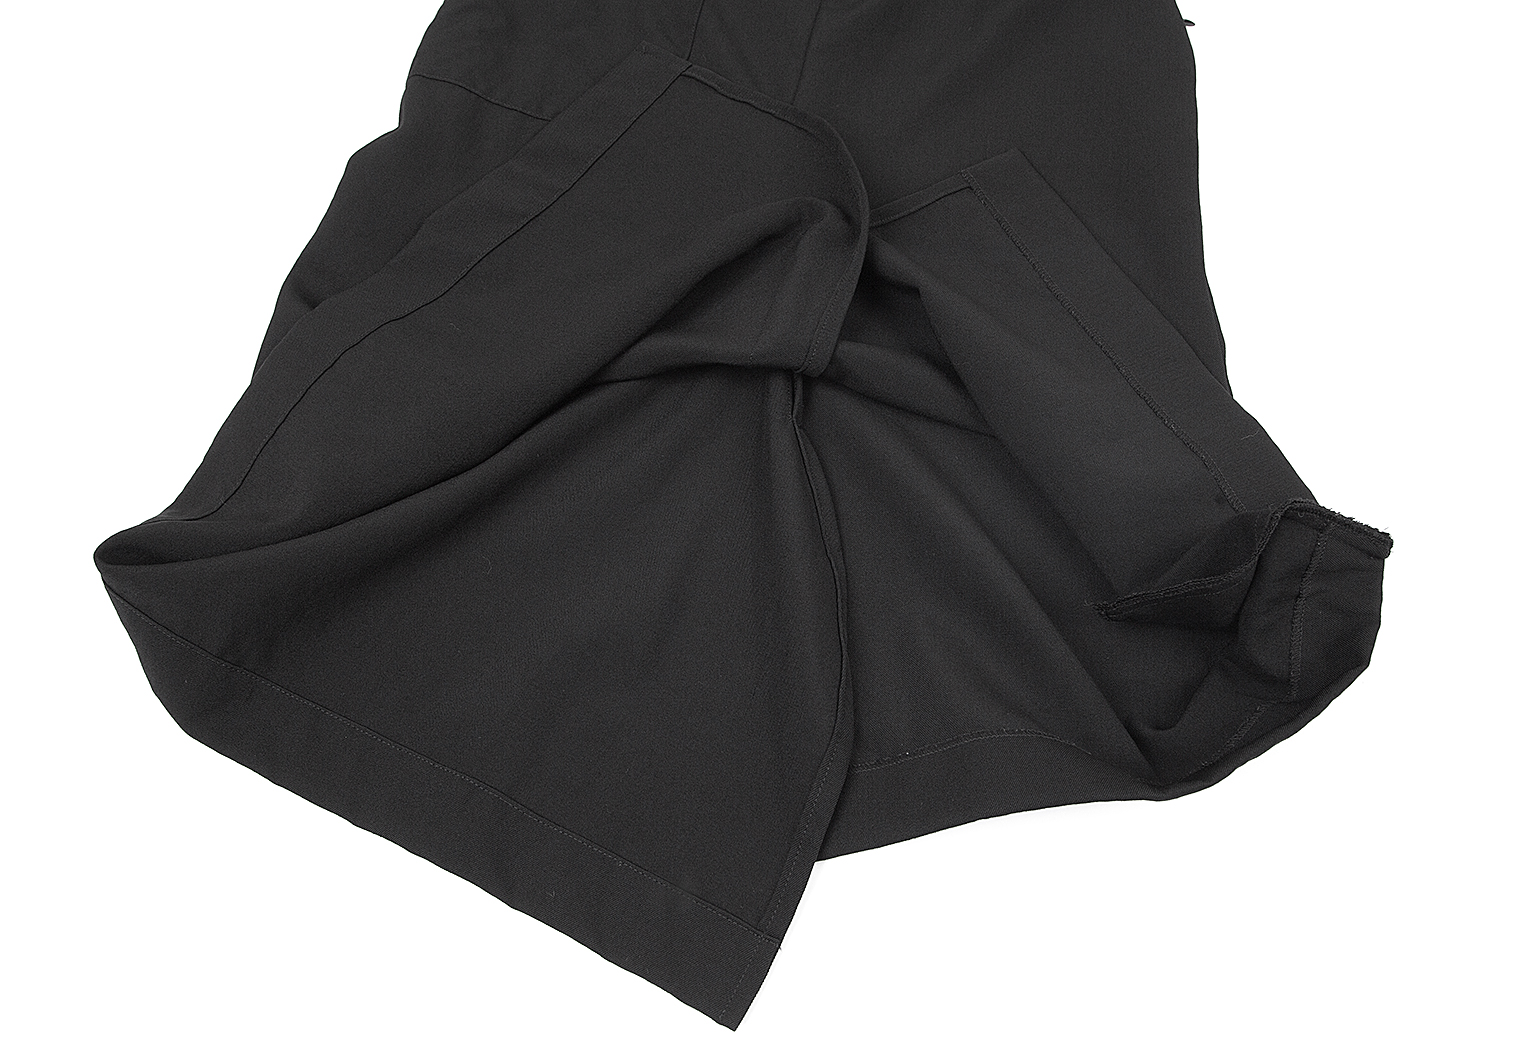 ワイズY's ウールギャバサルエルパンツ風スカート 黒2